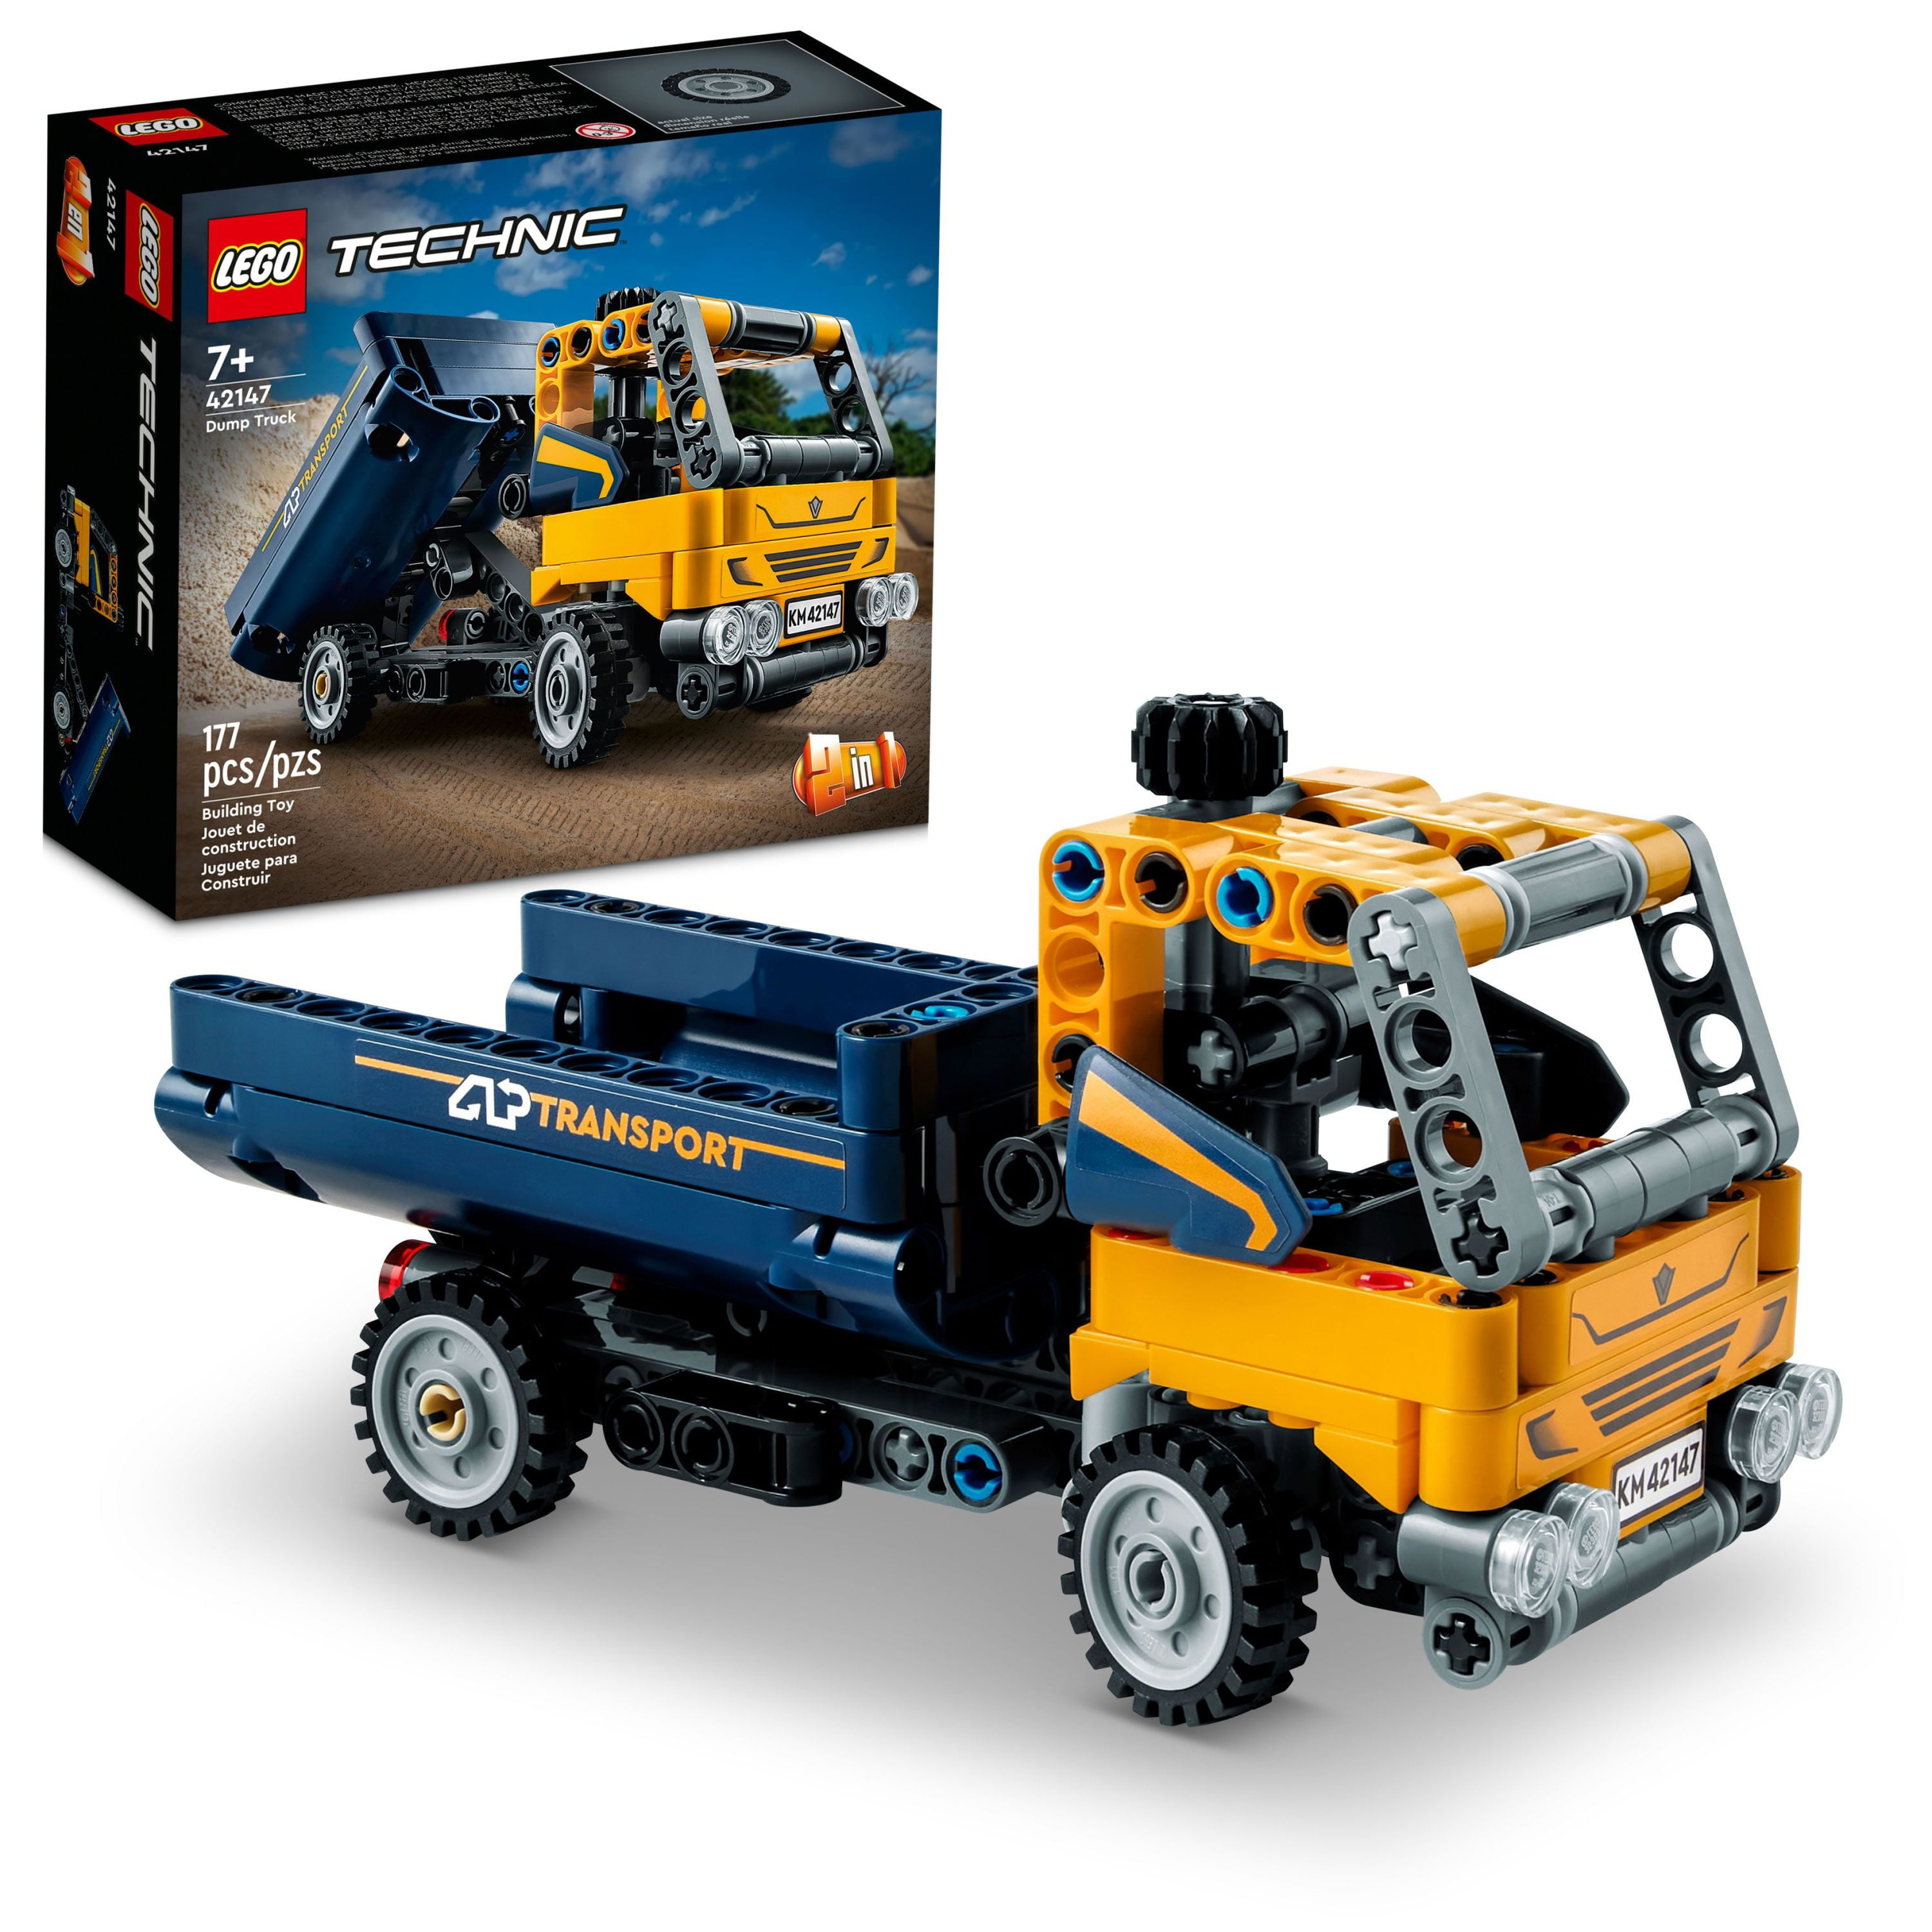 frugter paperback værdig LEGO Technic Dump Truck and Excavator Toys 2in1 Set 42147 - Walmart.com